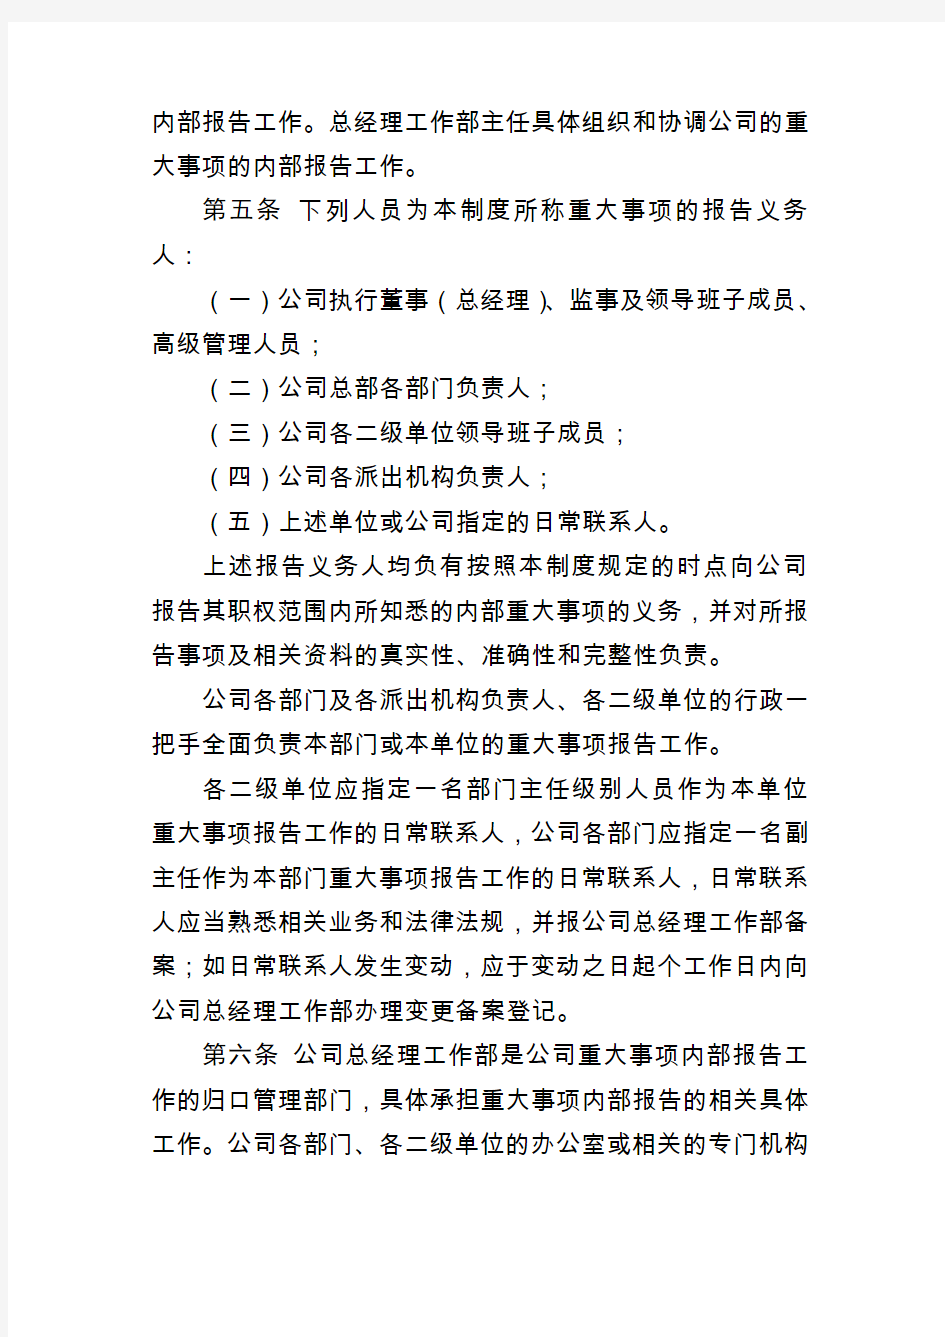 六局发〔2011〕313号中国水利水电第六工程局有限公司重大事项报告制度